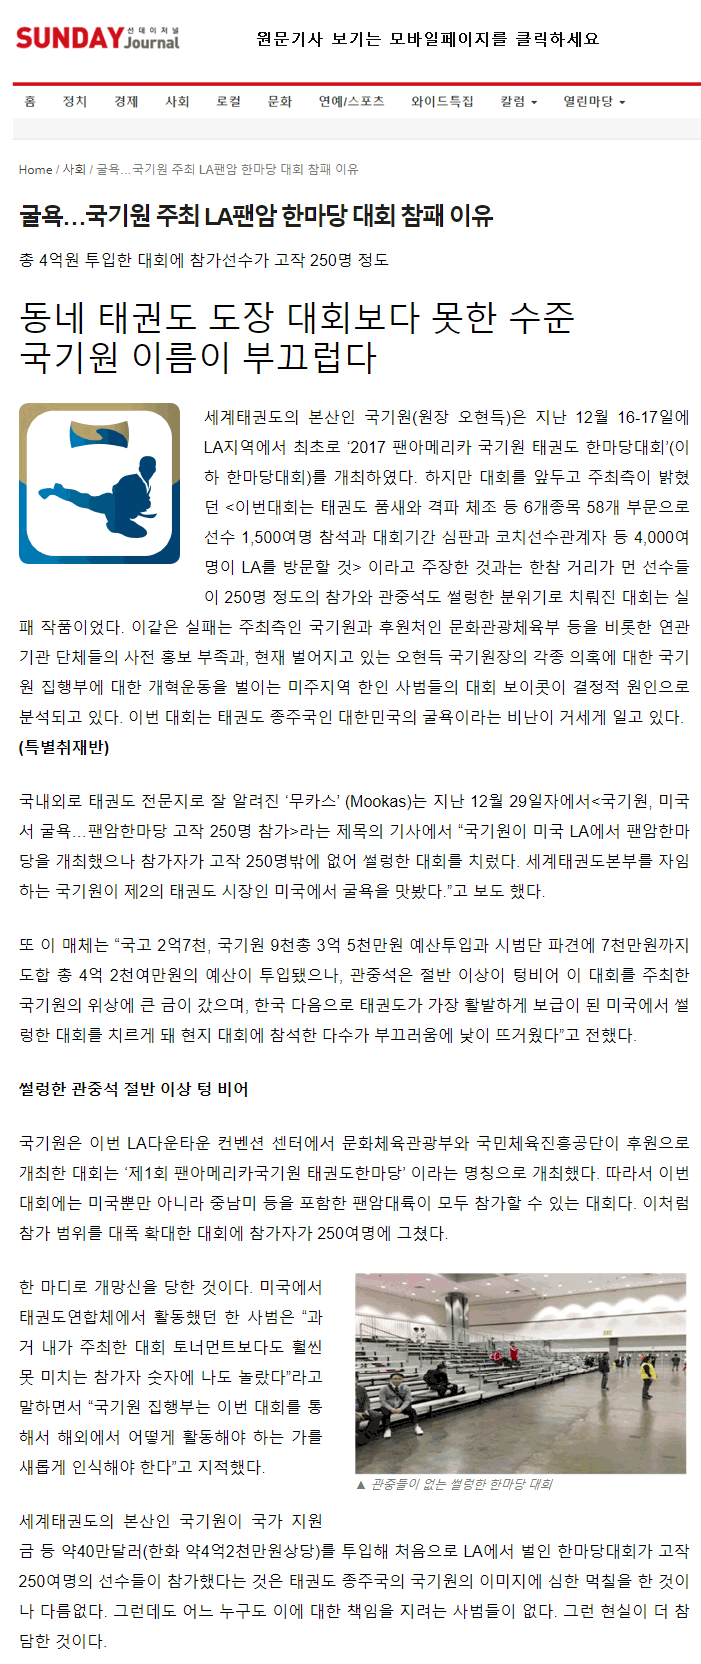 20180104_굴욕국기원주최la팬암한마당대회참패이유_sunday_01.gif